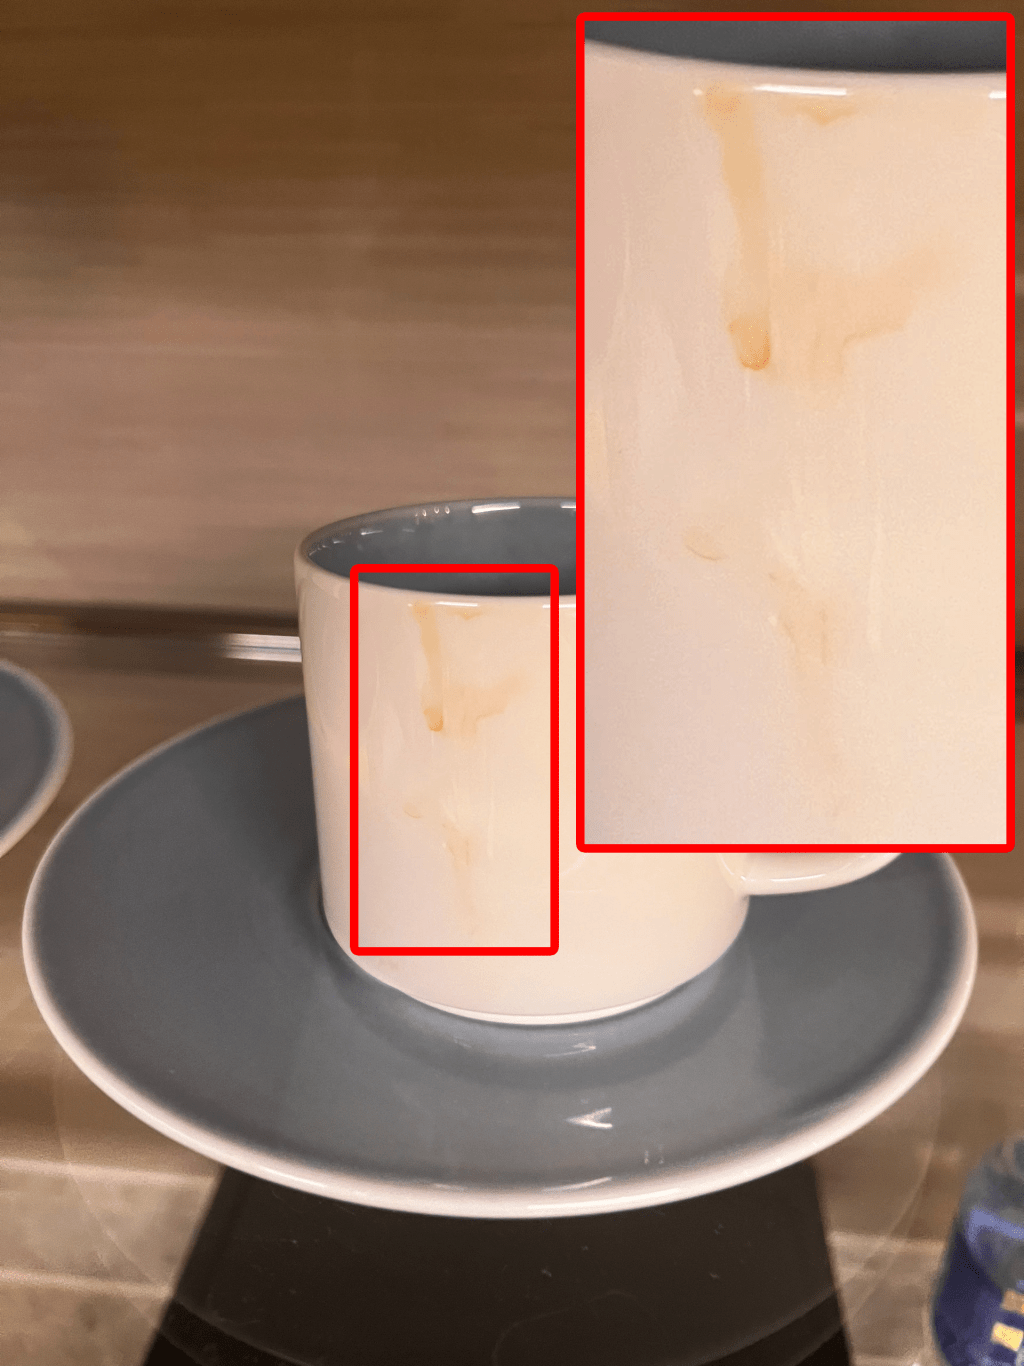 酒店的房務部總監表示：「經過檢查後，杯邊的啡色痕跡為陶瓷燒製咖啡杯原有的花紋設計。」